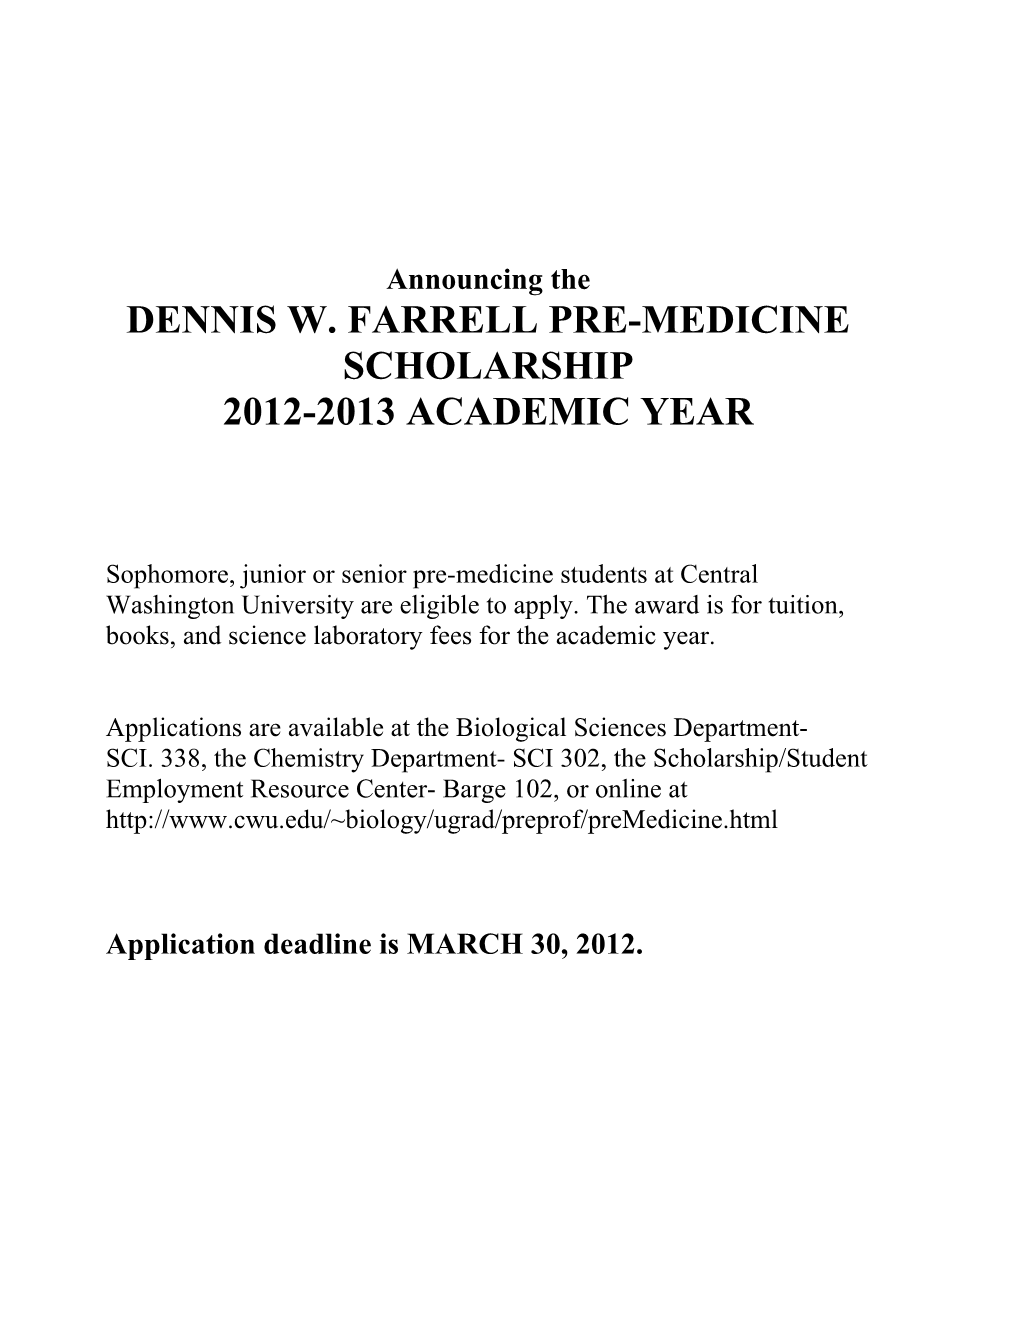 Dennis W. Farrell Pre-Medicine s1